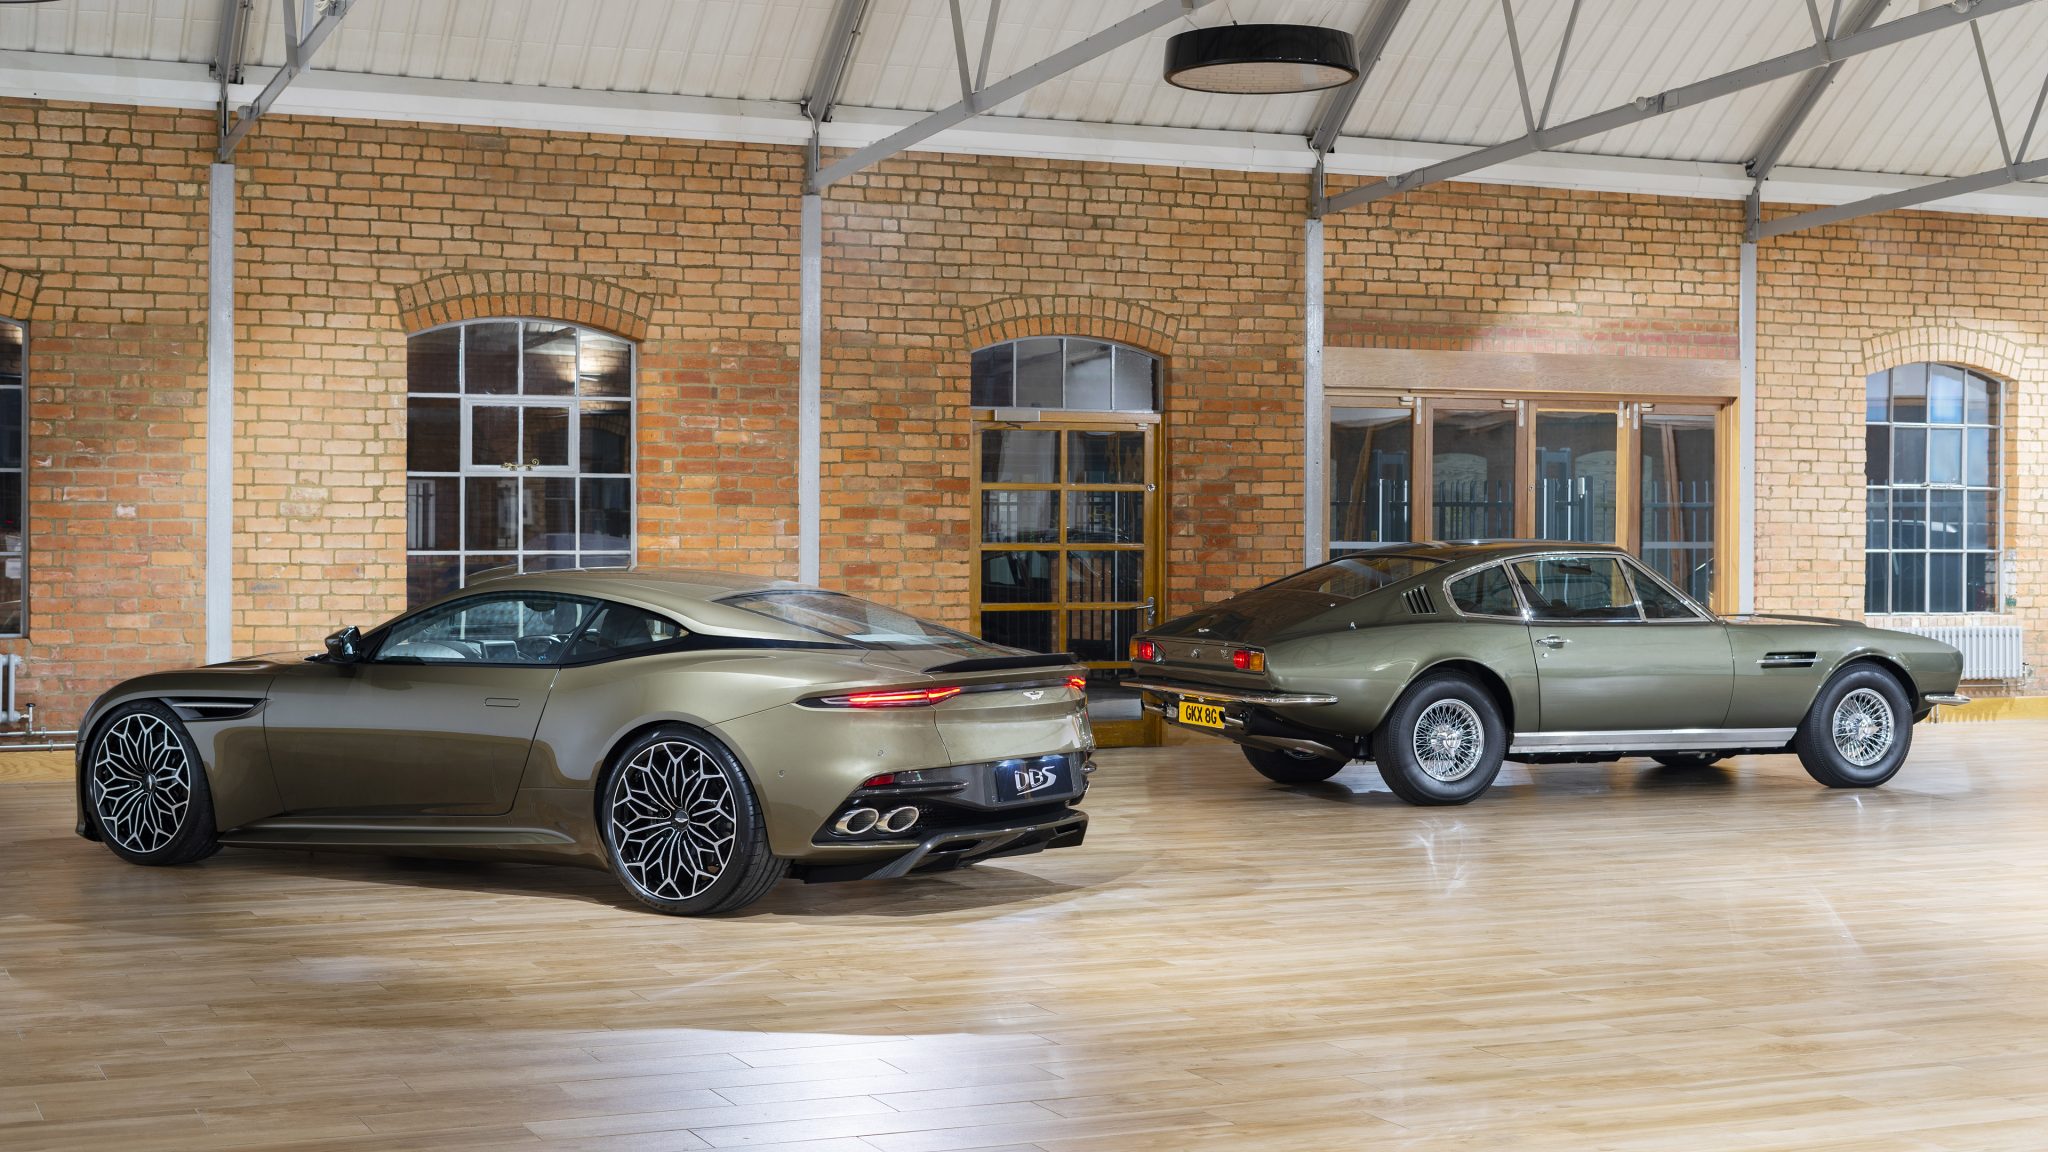 2019 Aston Martin DBS Superleggera OHMSS Edit
ion